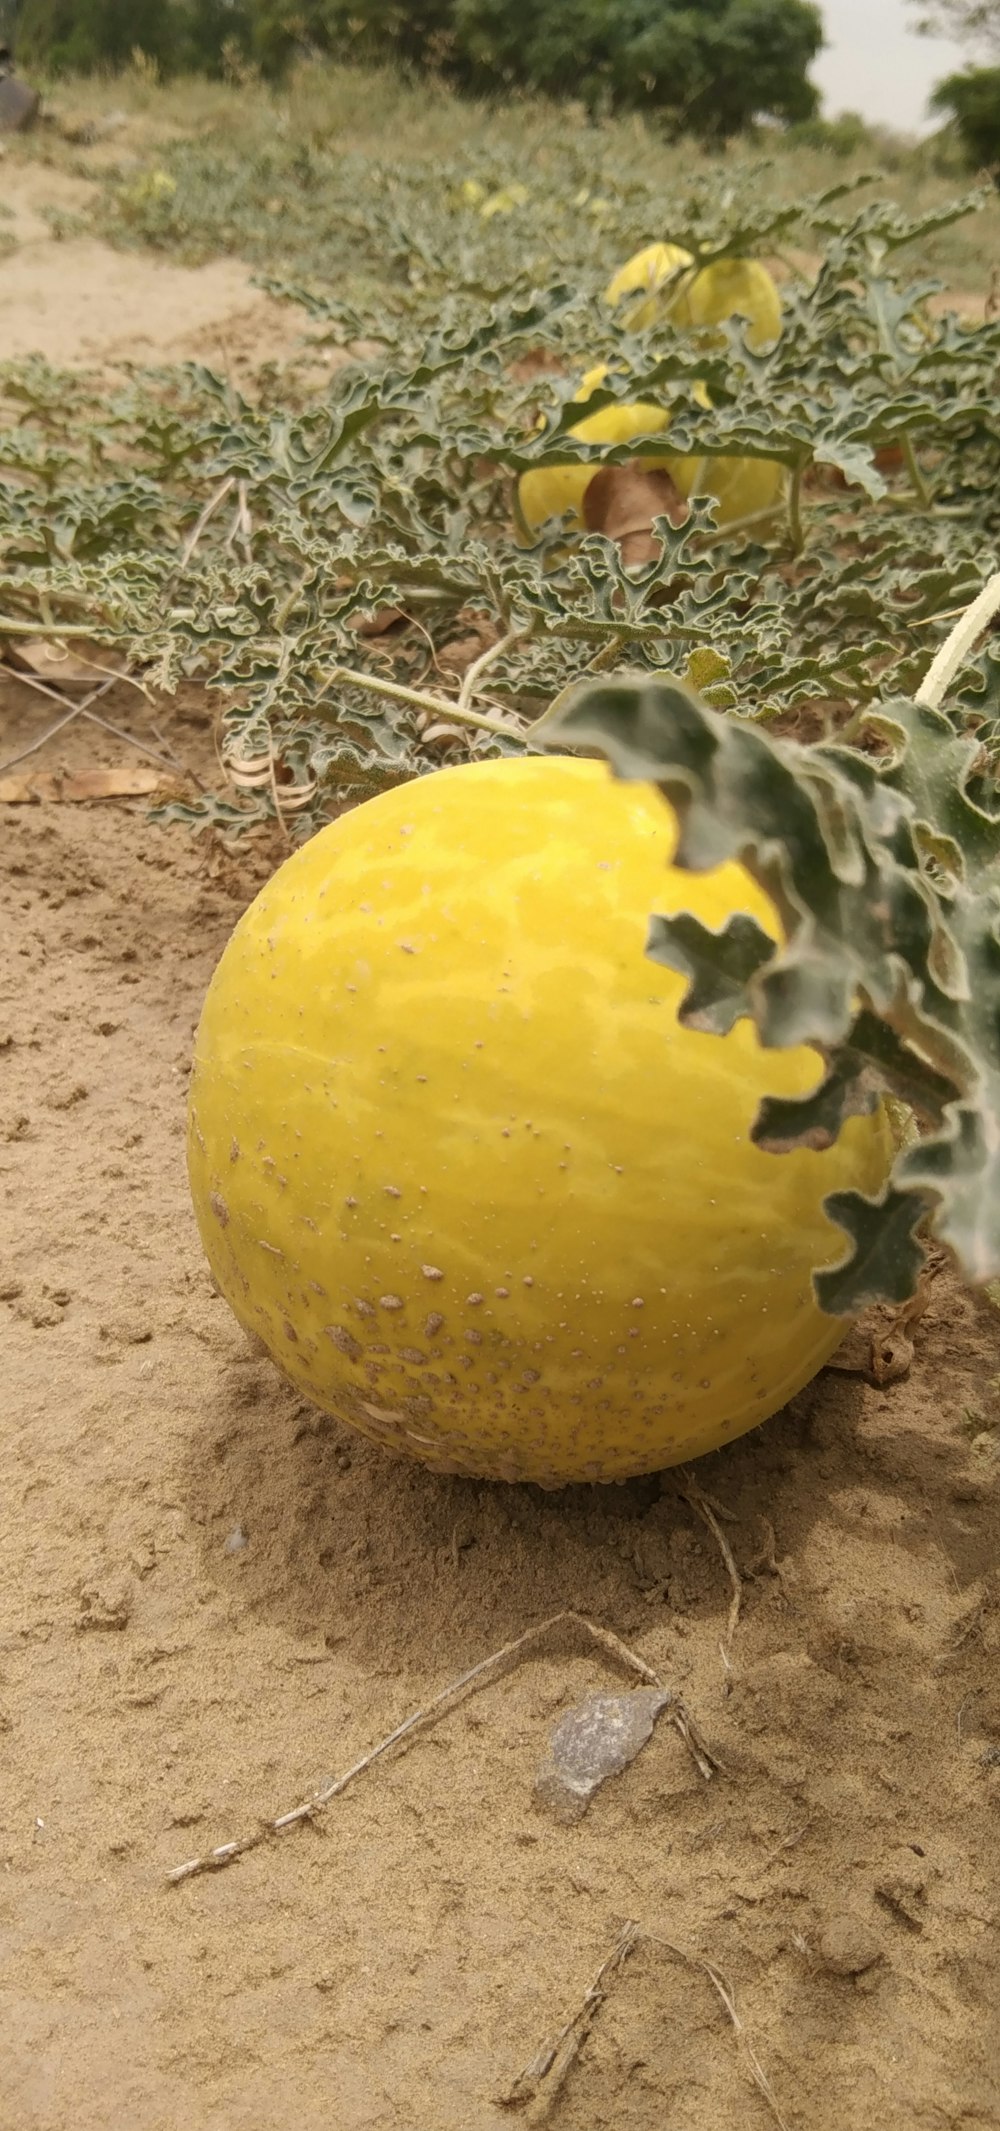 un frutto giallo a terra